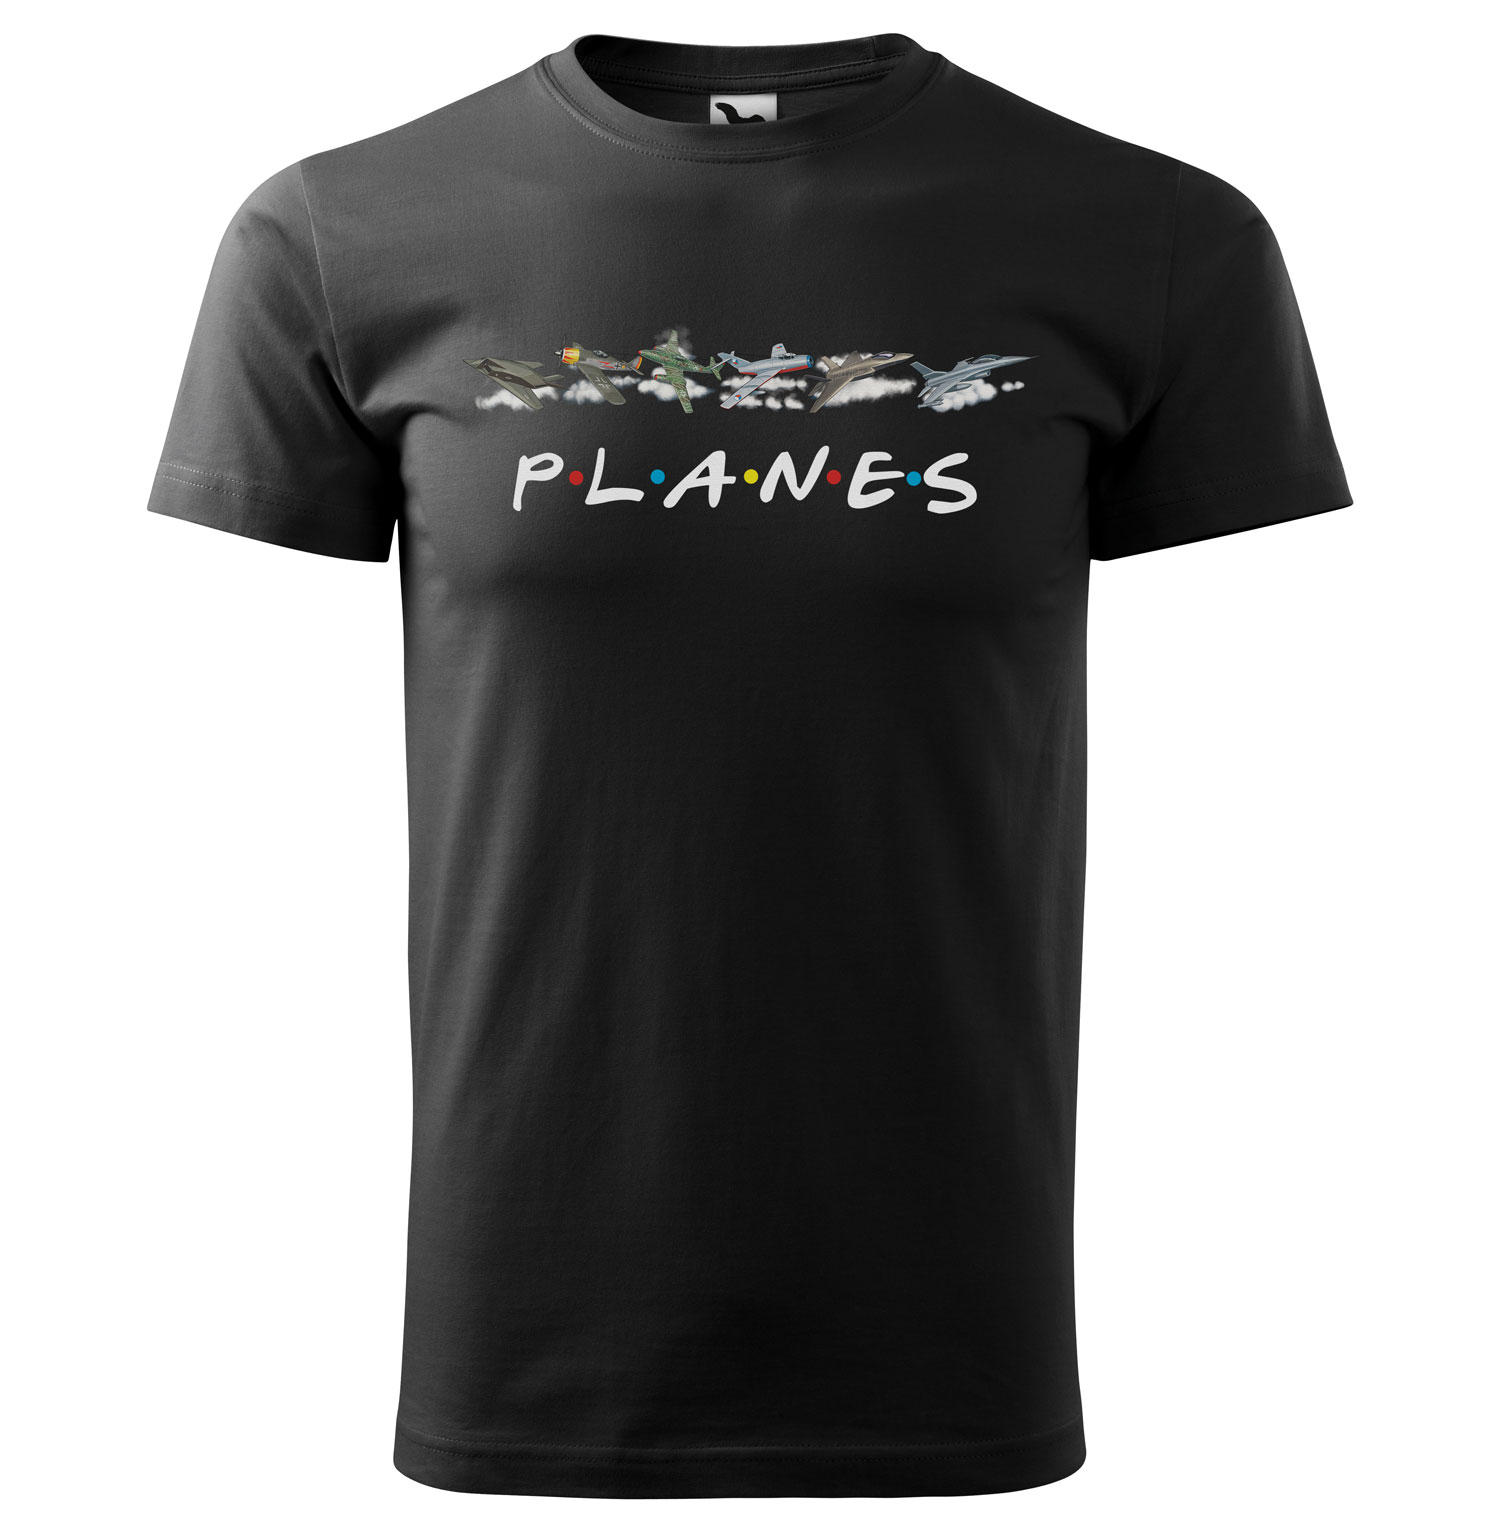 Tričko Planes (Velikost: XL, Typ: pro muže, Barva trička: Černá)